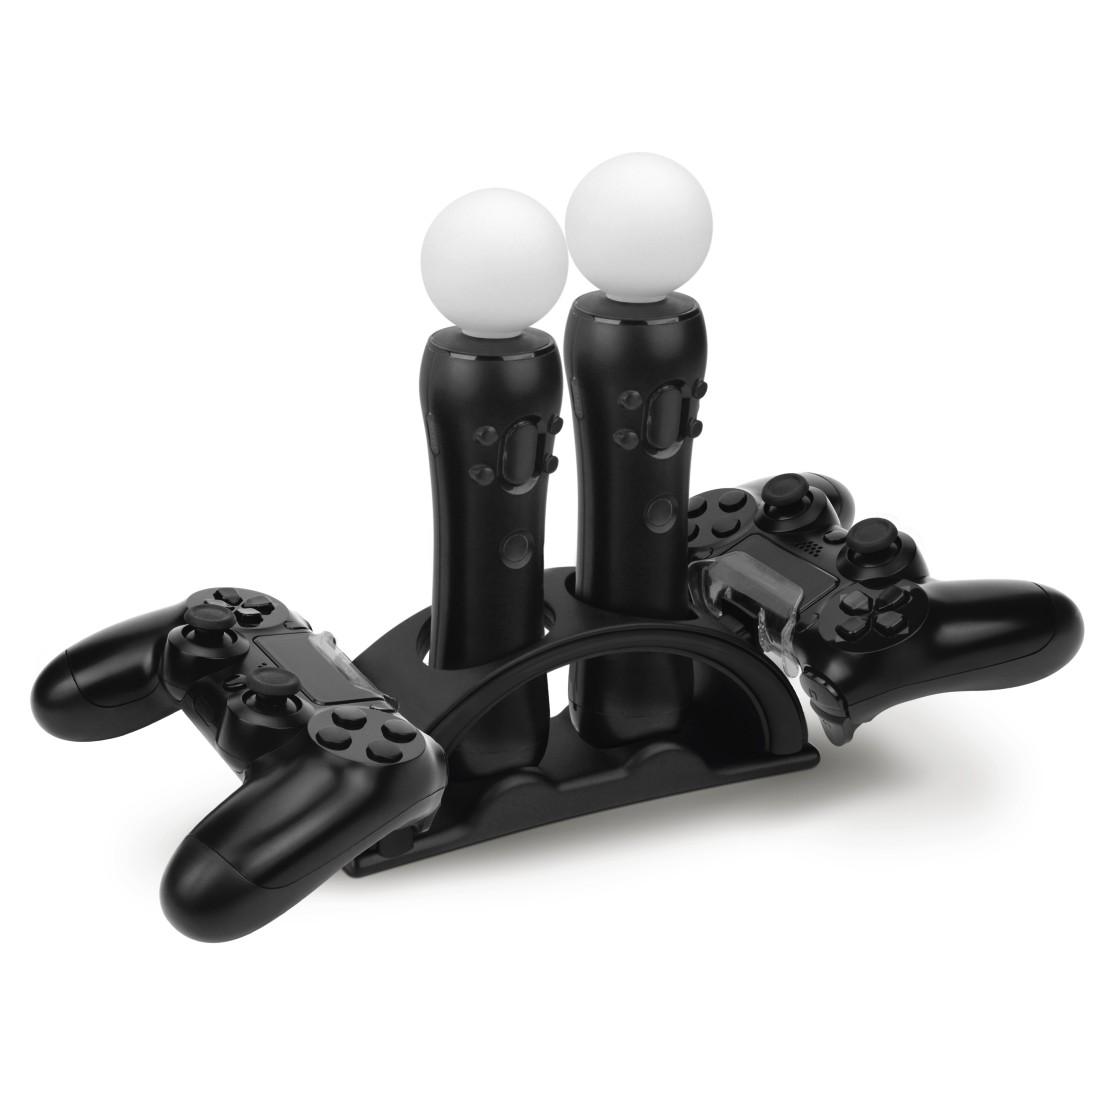 Câble Usb Recharge Manette Pour Sony Playstation 4 Ps4 3 Mètres